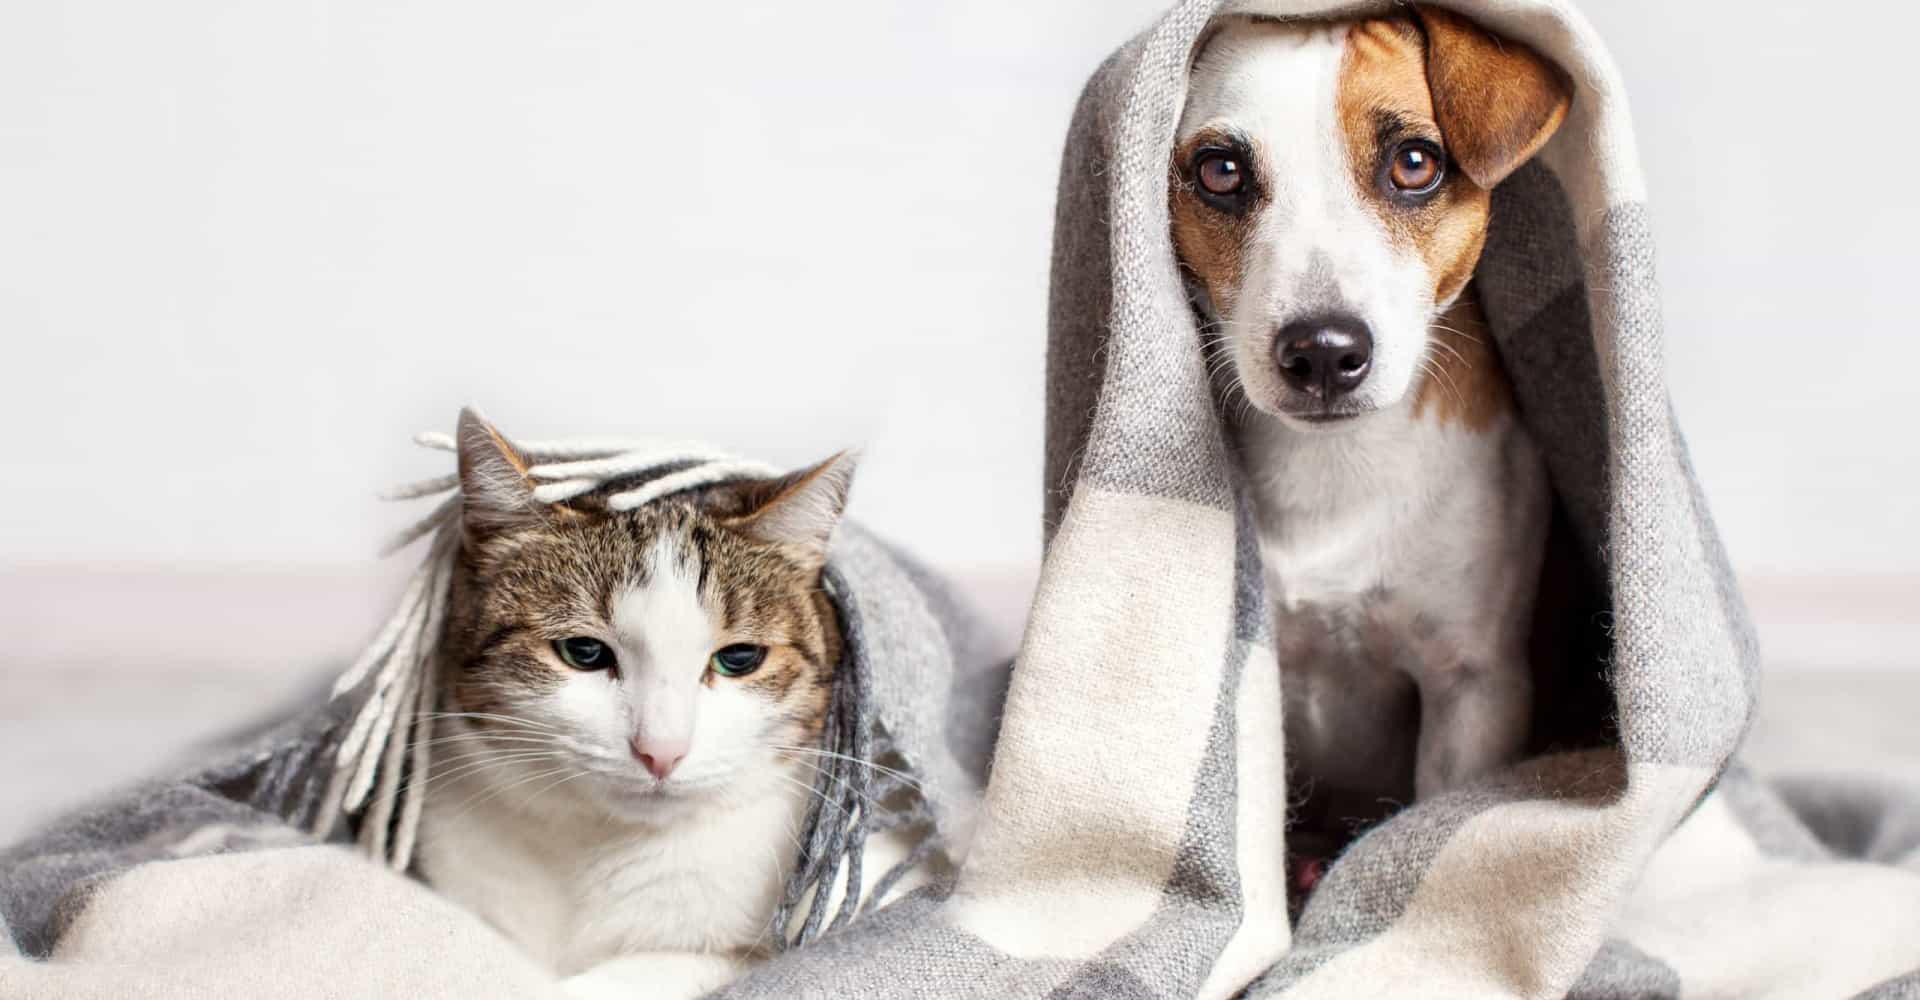 Soğuk Havalarda Evcil Hayvanlarınıza Nasıl Bakmalısınız?